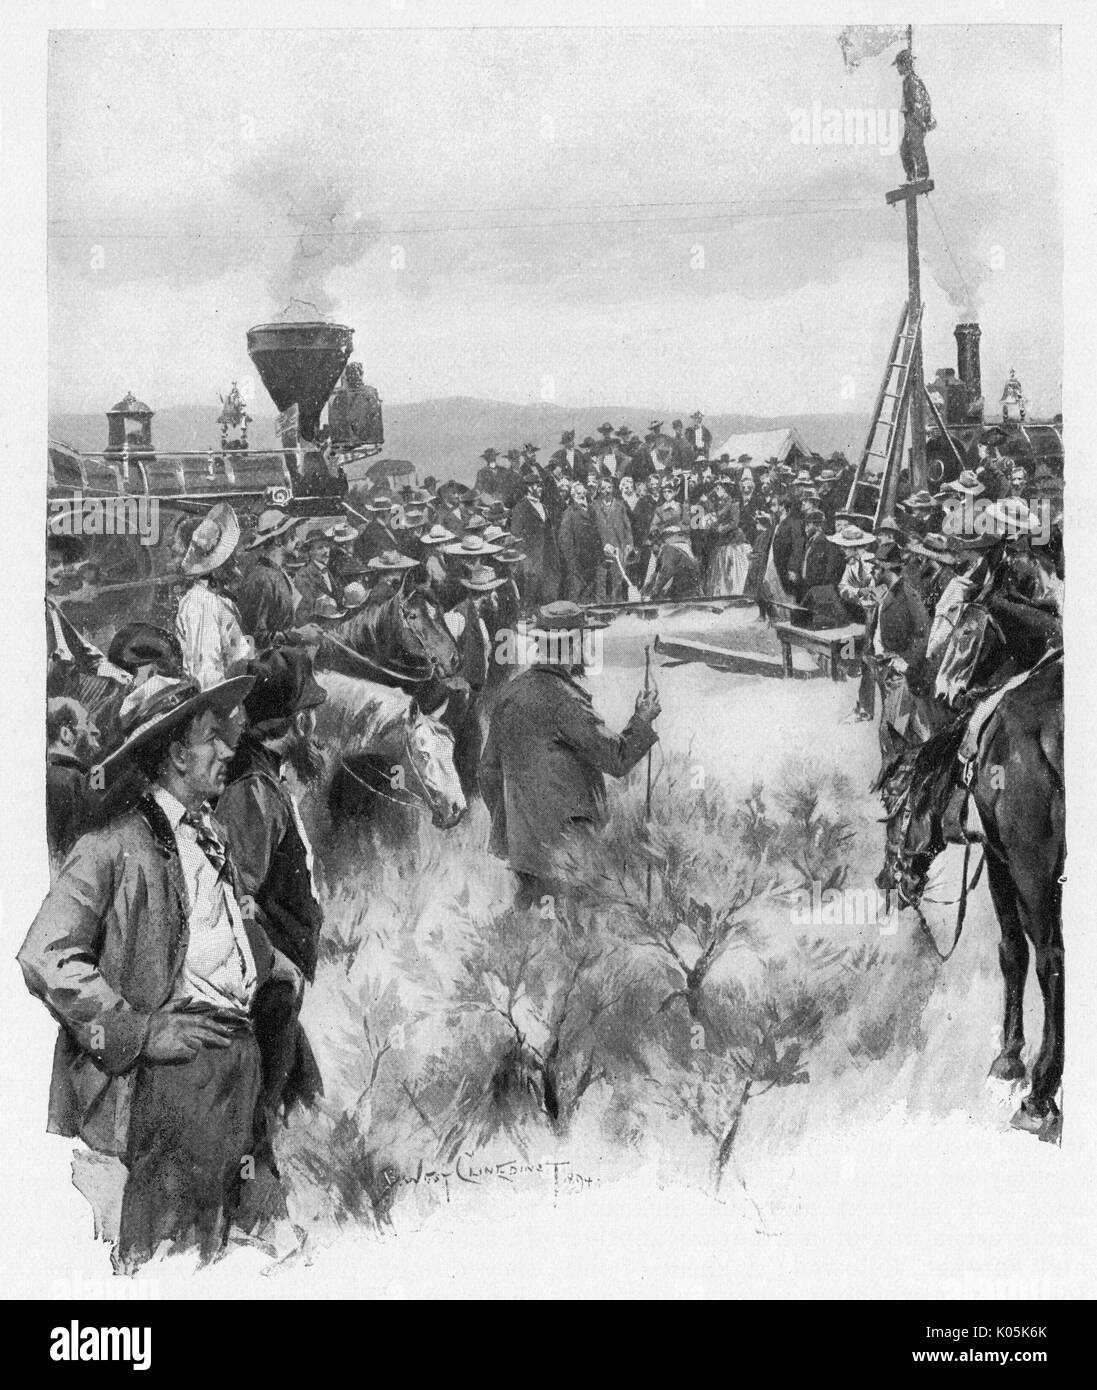 Finalización de la Union Pacific Railroad, el primer enlace ferroviario transcontinental, completado en Promontory Point, en Utah - conduciendo a casa el último spike Fecha: 10 de mayo de 1869 Foto de stock